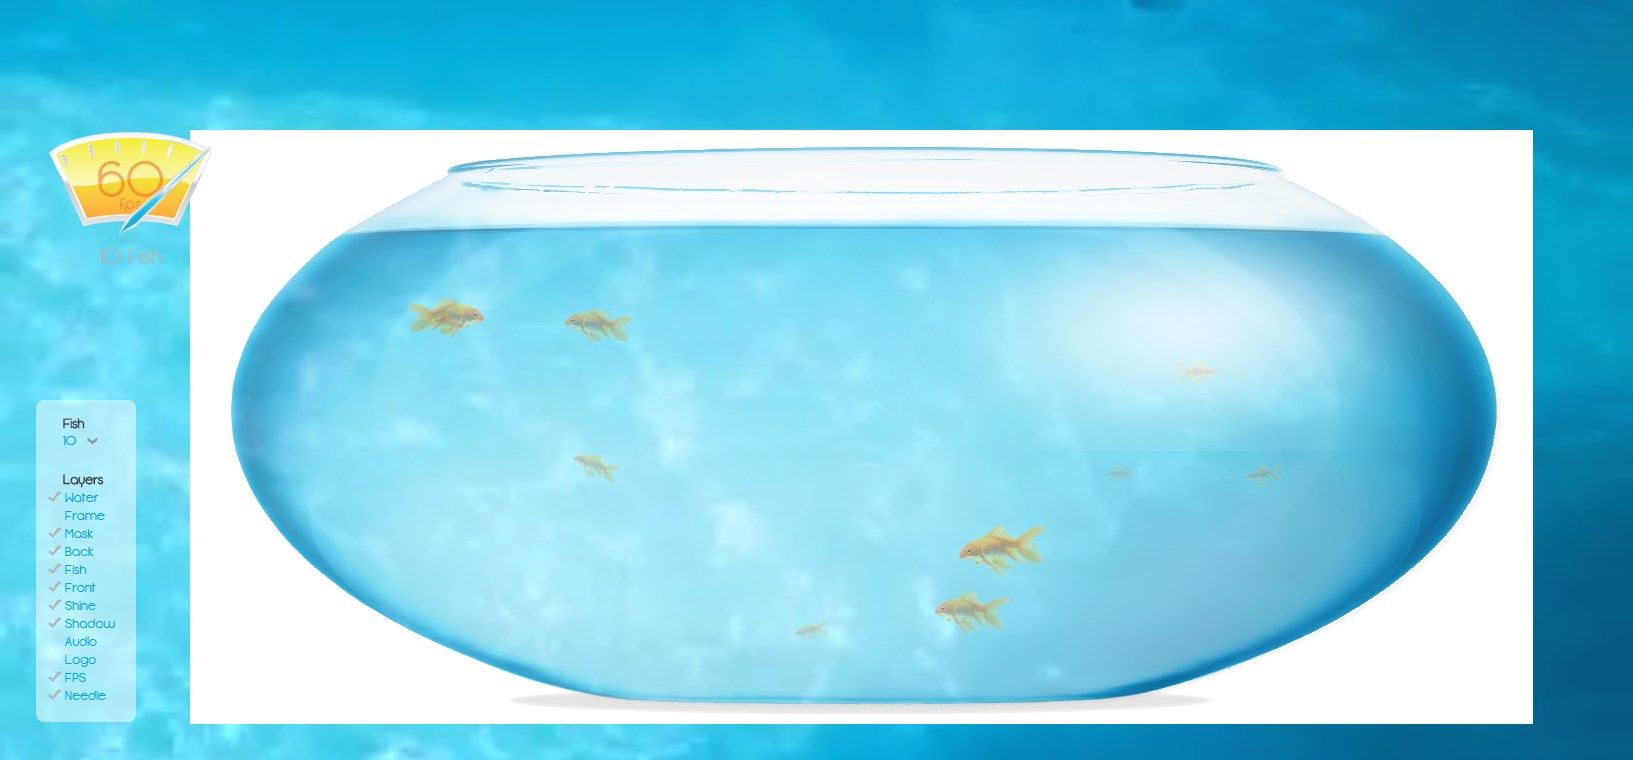 安卓养鱼测试软件入口  fishbowl金鱼测试软件下载以及使用教程[多图]图片1